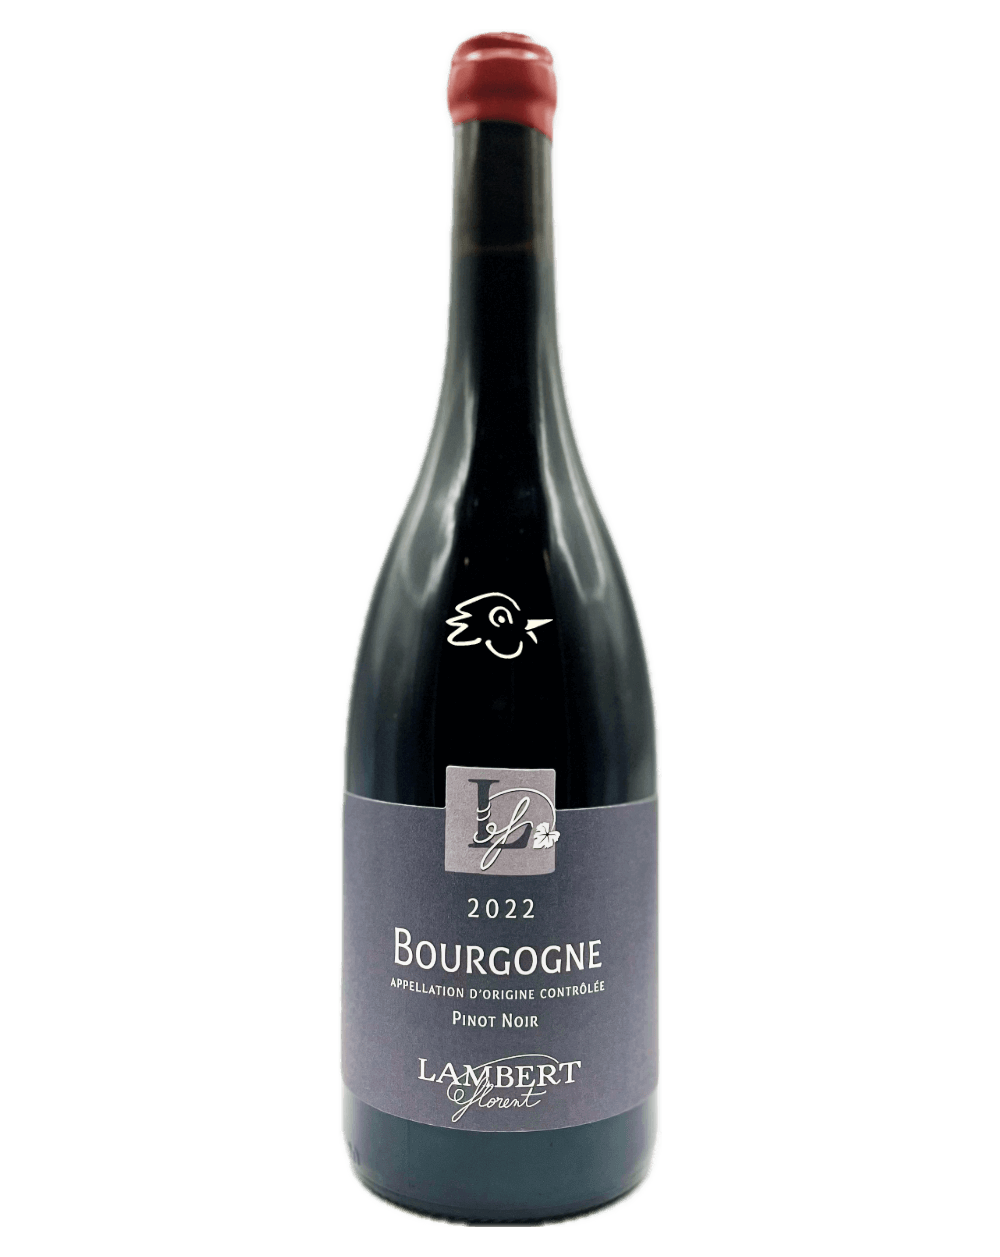 Florent Lambert - Bourgogne Rouge 2022 - Avintures